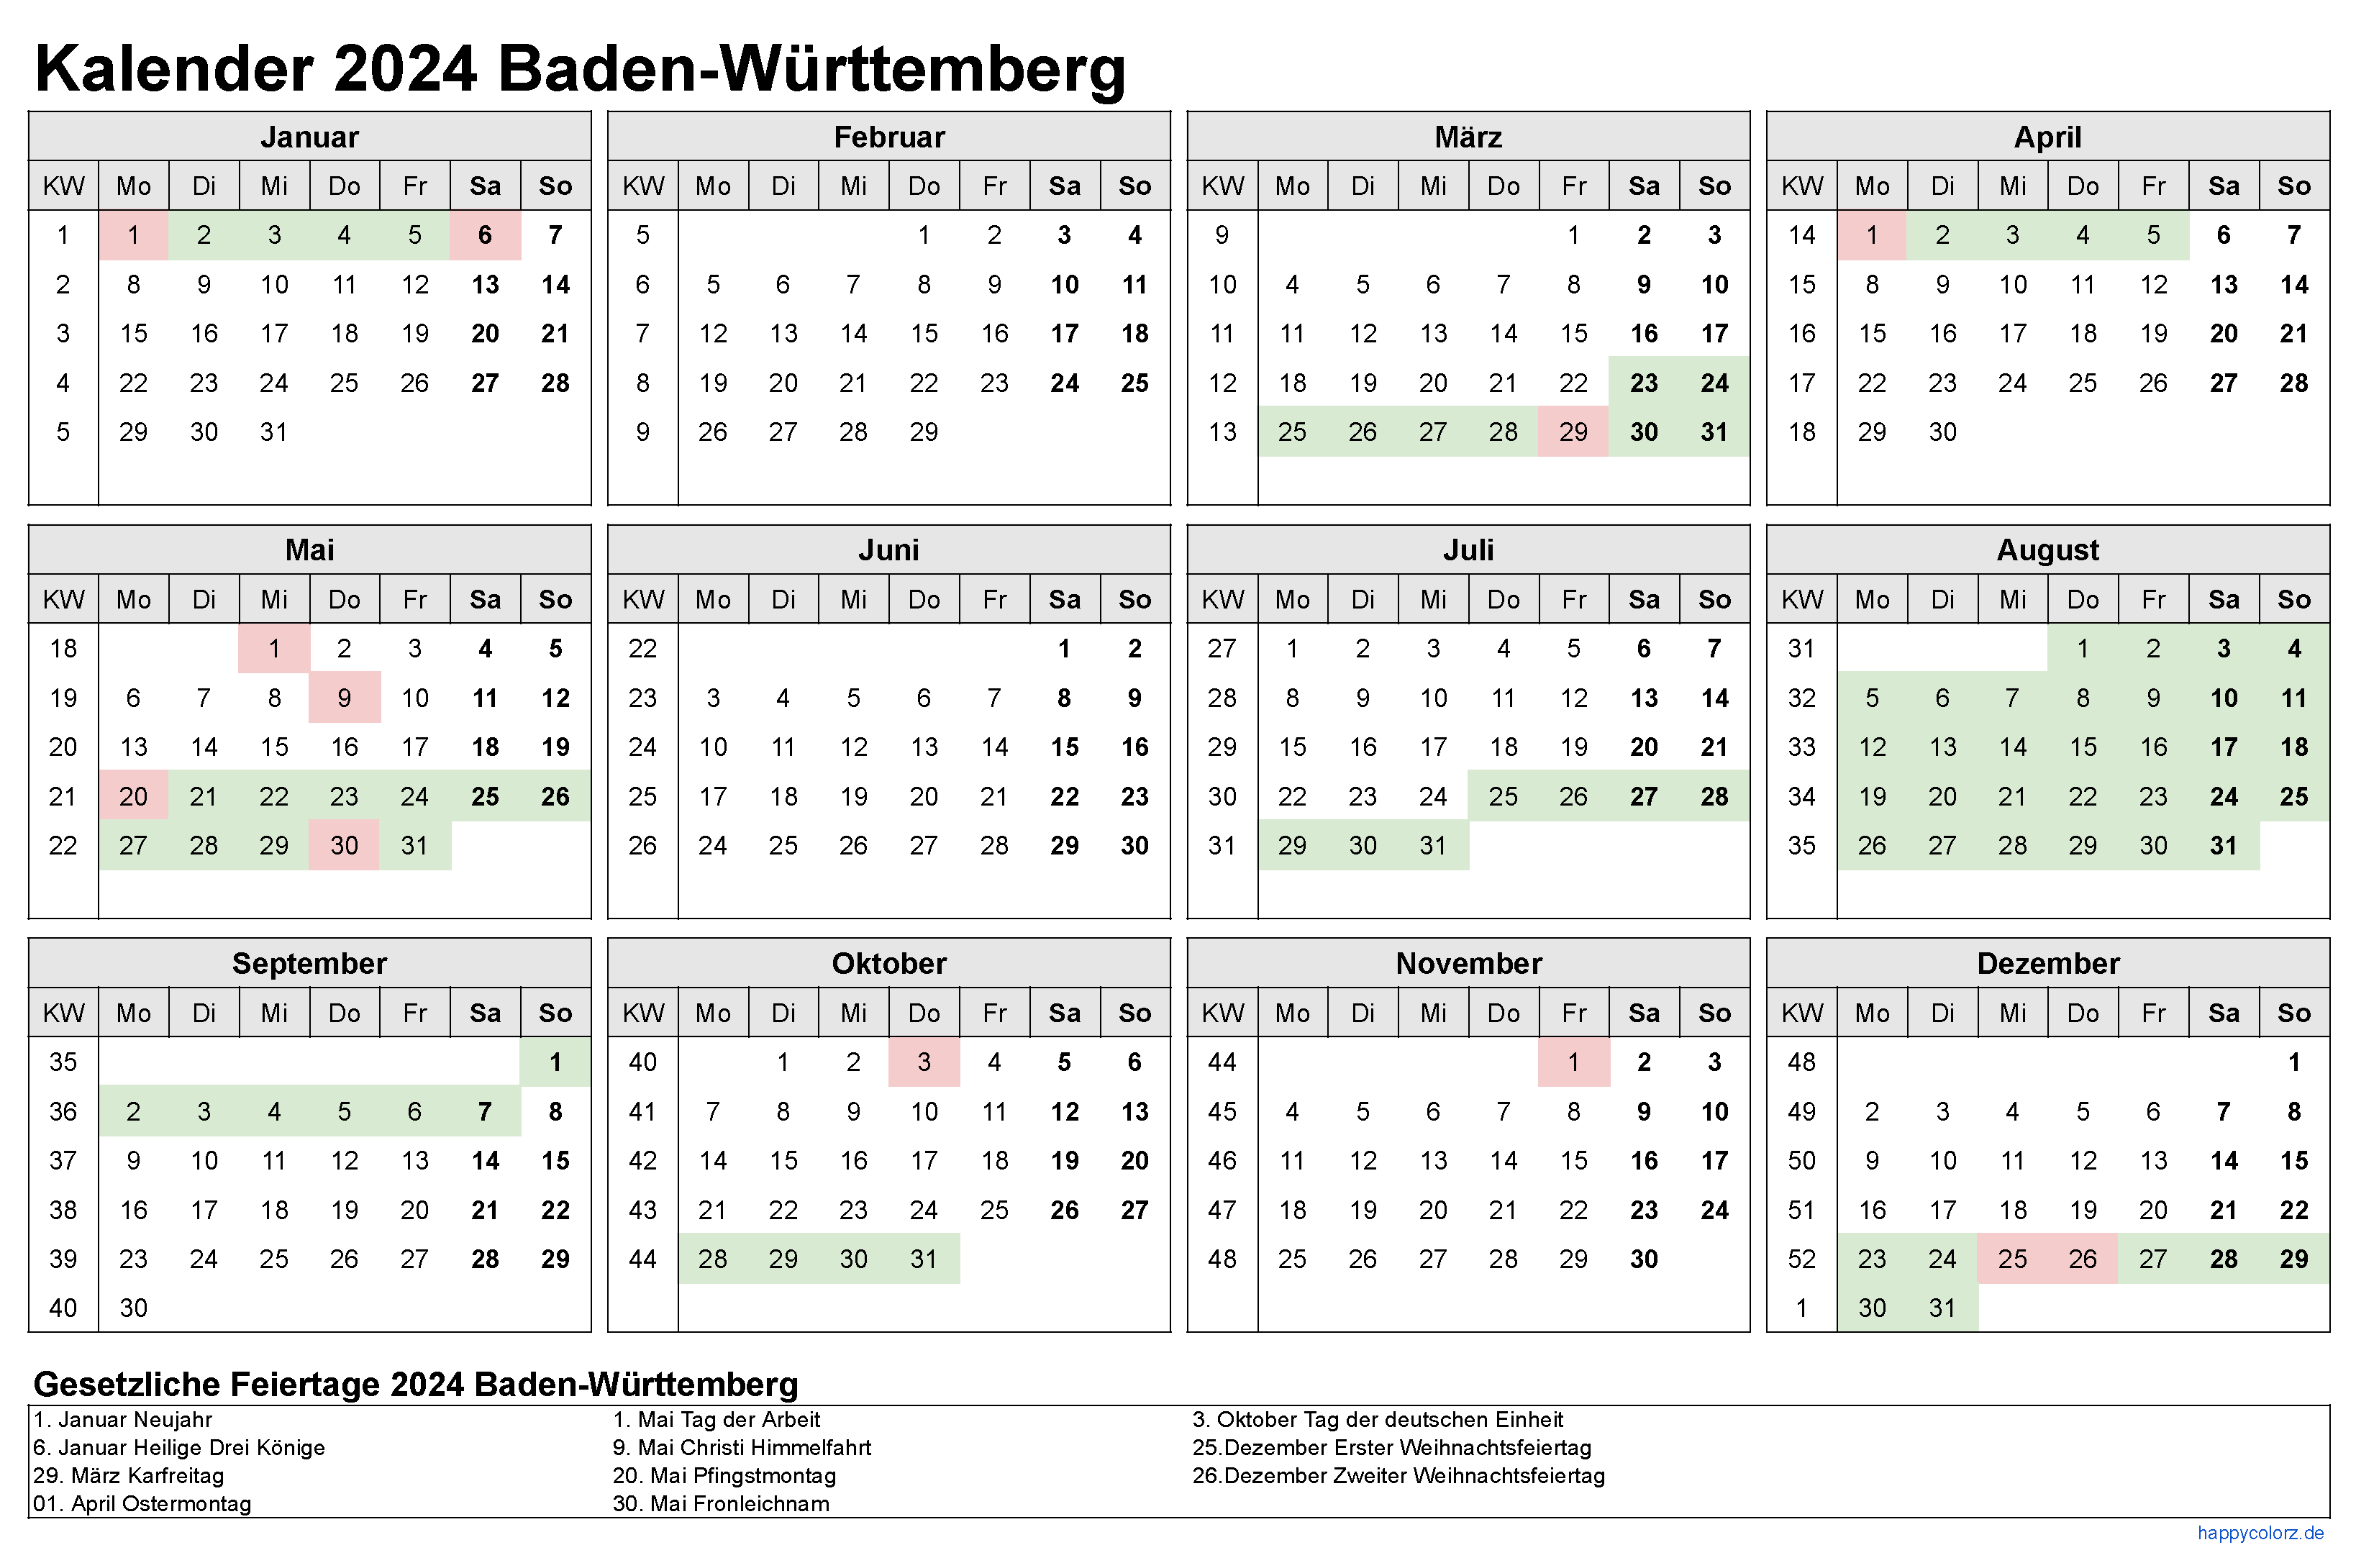 Kalender 2024 Baden-Württemberg zum Ausdrucken